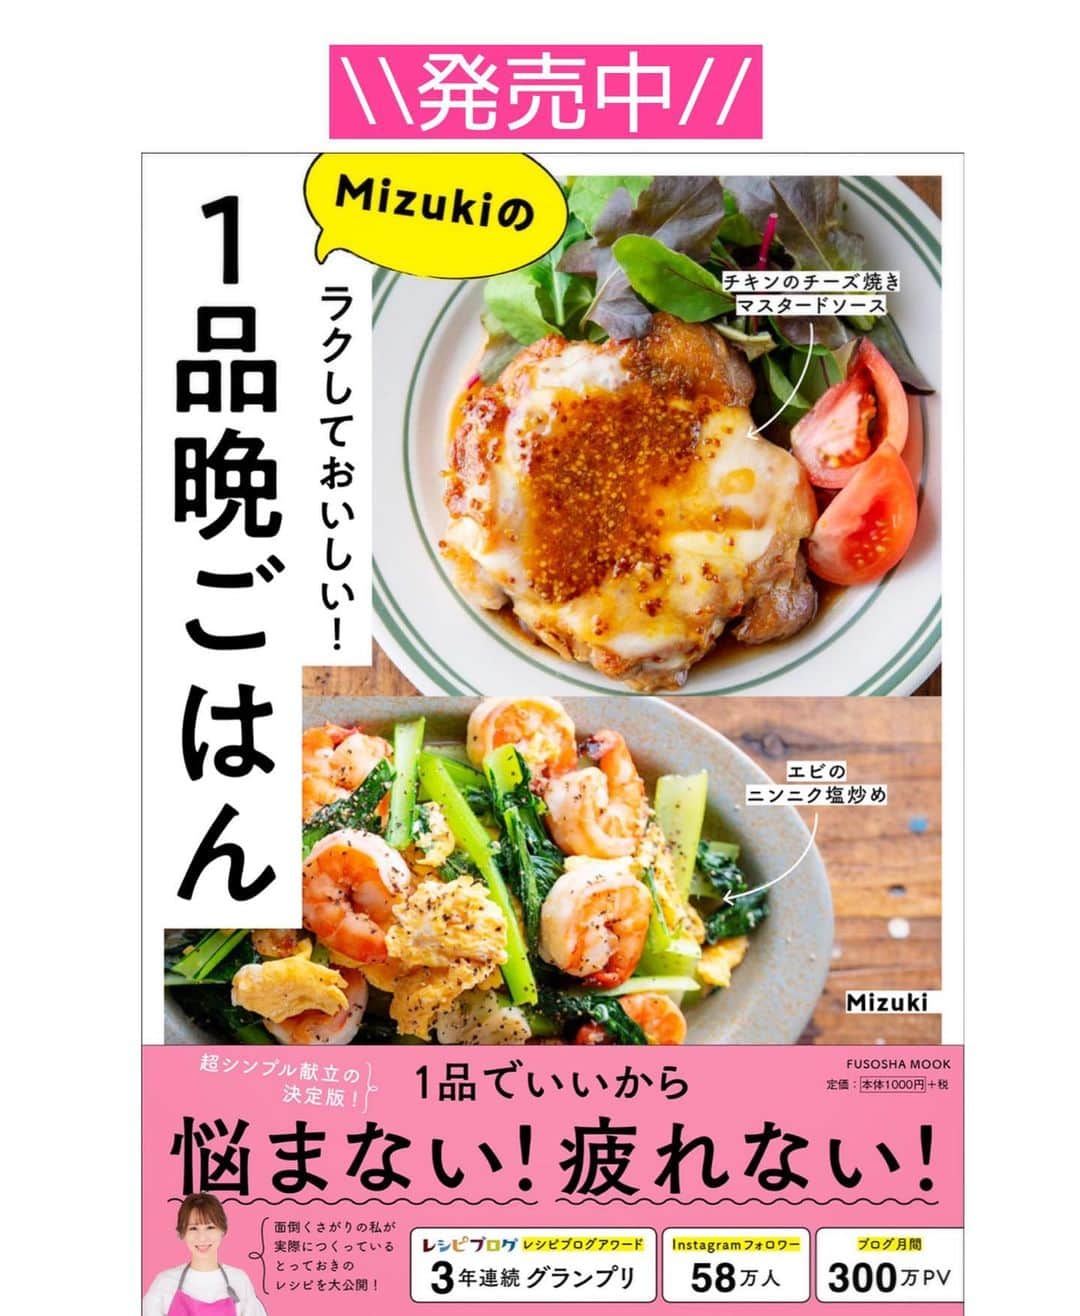 Mizuki【料理ブロガー・簡単レシピ】さんのインスタグラム写真 - (Mizuki【料理ブロガー・簡単レシピ】Instagram)「・﻿ 【#レシピ 】ーーーーーーーー﻿ ♡白菜入り坦々春雨スープ♡﻿ ーーーーーーーーーーーーーー﻿ ﻿ ﻿ ﻿ おはようございます(*^^*)﻿ ﻿ 今日ご紹介させていただくのは﻿ \\ 白菜入り坦々春雨スープ //﻿ ﻿ 春雨は戻さないから超簡単♡﻿ 更に練りごま不要でお手軽！﻿ 豆乳とごまをたっぷり加えて﻿ クリーミーに仕上げました♩﻿ ﻿ 寒い季節におすすめなので﻿ よかったらお試し下さいね(*^^*)﻿ ﻿ ﻿ ﻿ ＿＿＿＿＿＿＿＿＿＿＿＿＿＿＿＿＿＿＿＿﻿ 【2人分】﻿ 豚ひき肉...100g﻿ 白菜...100g﻿ 春雨...20g﻿ ごま油...小1﻿ 豆板醤...小1/2﻿ ●水...200ml﻿ ●味噌...小2﻿ ●鶏がらスープ・醤油...各小1﻿ 豆乳...150ml﻿ すりごま...大1.5﻿ (好みで)ラー油...適量﻿ ﻿ 1.白菜は細切りにする。﻿ 2.鍋にごま油、豆板醤、ひき肉を入れ、中火にかけて炒める。火が通ったら●、白菜、春雨を加え、混ぜながら5分煮る。﻿ 3.豆乳とすりごまを加え、沸騰直前まで温める。仕上げにラー油をかける。﻿ ￣￣￣￣￣￣￣￣￣￣￣￣￣￣￣￣￣￣￣￣﻿ ﻿ ﻿ ﻿ ﻿ 《ポイント》﻿ ♦︎春雨は戻さず乾燥のまま加えています♩﻿ ♦︎無調整豆乳を使用しています♩﻿ ♦︎豆板醤なしで作ると小さなお子さんも食べられます♩大人は仕上げのラー油で好みの辛さにして下さい♩﻿ ﻿ ﻿ ﻿ ﻿ ﻿ ﻿ ﻿ 📕新刊発売中📕﻿ 【ラクしておいしい！#1品晩ごはん 】﻿ ￣￣￣￣￣￣￣￣￣￣￣￣￣￣￣￣￣﻿ 私たちだってヘトヘトな日がある•••﻿ 毎日何品も作っていられない•••﻿ もうごはんに悩みたくない😢﻿ そんな時、1品ごはんはいかがでしょう？﻿ というご提案です✨﻿ ﻿ 【1品ごはん】は﻿ 副菜いらずで全てがシンプル！﻿ ￣￣￣￣￣￣￣￣￣￣￣￣￣￣￣￣￣￣﻿ 一品つくるだけでいいから﻿ 献立を考えなくてよし！﻿ ￣￣￣￣￣￣￣￣￣￣￣￣￣￣￣￣￣￣﻿ 悩まない、疲れない、﻿ 気力や時間がなくてもなんとかなる！﻿ ￣￣￣￣￣￣￣￣￣￣￣￣￣￣￣￣￣￣﻿ そんな頼りになる﻿ 便利なお助けごはんです☺️💕﻿ (ハイライトに🔗貼っています✨)﻿ ￣￣￣￣￣￣￣￣￣￣￣￣￣￣￣￣￣﻿ ﻿ ﻿ ﻿ ﻿ ﻿ ⭐️発売中⭐️﻿ ＿＿＿＿＿＿＿＿＿＿＿＿＿＿＿＿＿＿﻿ しんどくない献立、考えました♩﻿ \15分でいただきます/﻿ 📕#Mizukiの2品献立 📕﻿ ﻿ 和食をもっとカジュアルに♩﻿ \毎日のごはんがラクになる/﻿ 📘#Mizukiの今どき和食 📘﻿ ﻿ ホケミレシピの決定版♩﻿ \はじめてでも失敗しない/﻿ 📙#ホットケーキミックスのお菓子 📙﻿ ﻿ NHKまる得マガジンテキスト☆﻿ ホットケーキミックスで﻿ 📗絶品おやつ&意外なランチ📗﻿ ￣￣￣￣￣￣￣￣￣￣￣￣￣￣￣￣￣￣﻿ ﻿ ﻿ ﻿ ＿＿＿＿＿＿＿＿＿＿＿＿＿＿＿＿＿＿﻿ レシピを作って下さった際や﻿ レシピ本についてのご投稿には﻿ タグ付け( @mizuki_31cafe )して﻿ お知らせいただけると嬉しいです😊💕﻿ ￣￣￣￣￣￣￣￣￣￣￣￣￣￣￣￣￣￣﻿ ﻿ ﻿ ﻿ ﻿ #坦々スープ#白菜#春雨スープ#豆乳#Mizuki#簡単レシピ#時短レシピ#節約レシピ#料理#フーディーテーブル#マカロニメイト#おうちごはん#デリスタグラマー#料理好きな人と繋がりたい#おうちごはんlover#写真好きな人と繋がりたい#foodpic#cooking#recipe#lin_stagrammer#foodporn#yummy#f52grams#白菜入り坦々春雨スープm」1月8日 7時06分 - mizuki_31cafe